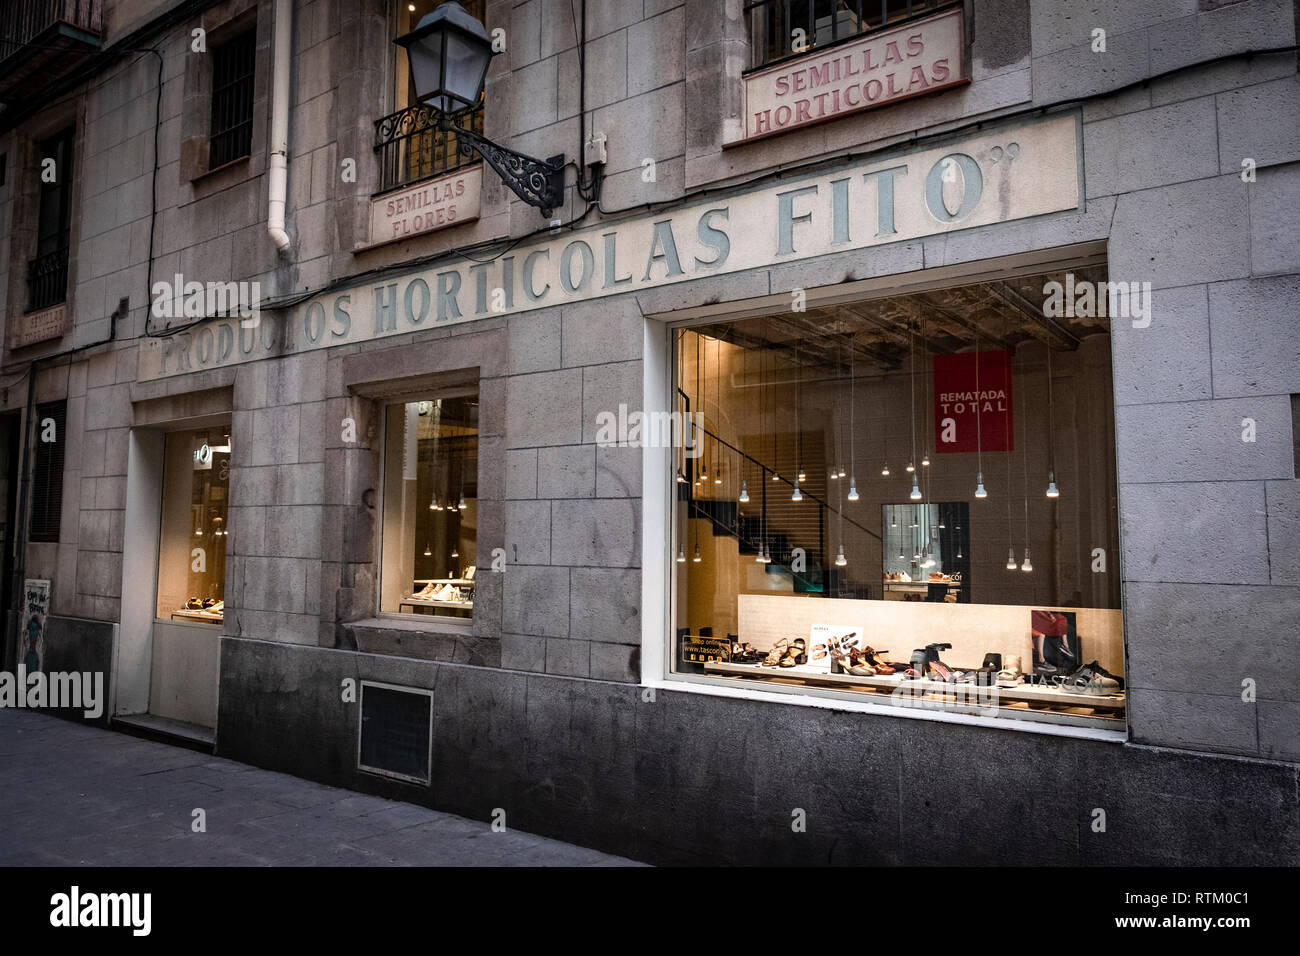 Una antigua tienda dedicada a la venta de productos hortícolas en el Barrio  Gótico de Barcelona está ocupado actualmente por la marca de zapatos Tascón.  Dos emblemáticas tiendas en el centro de